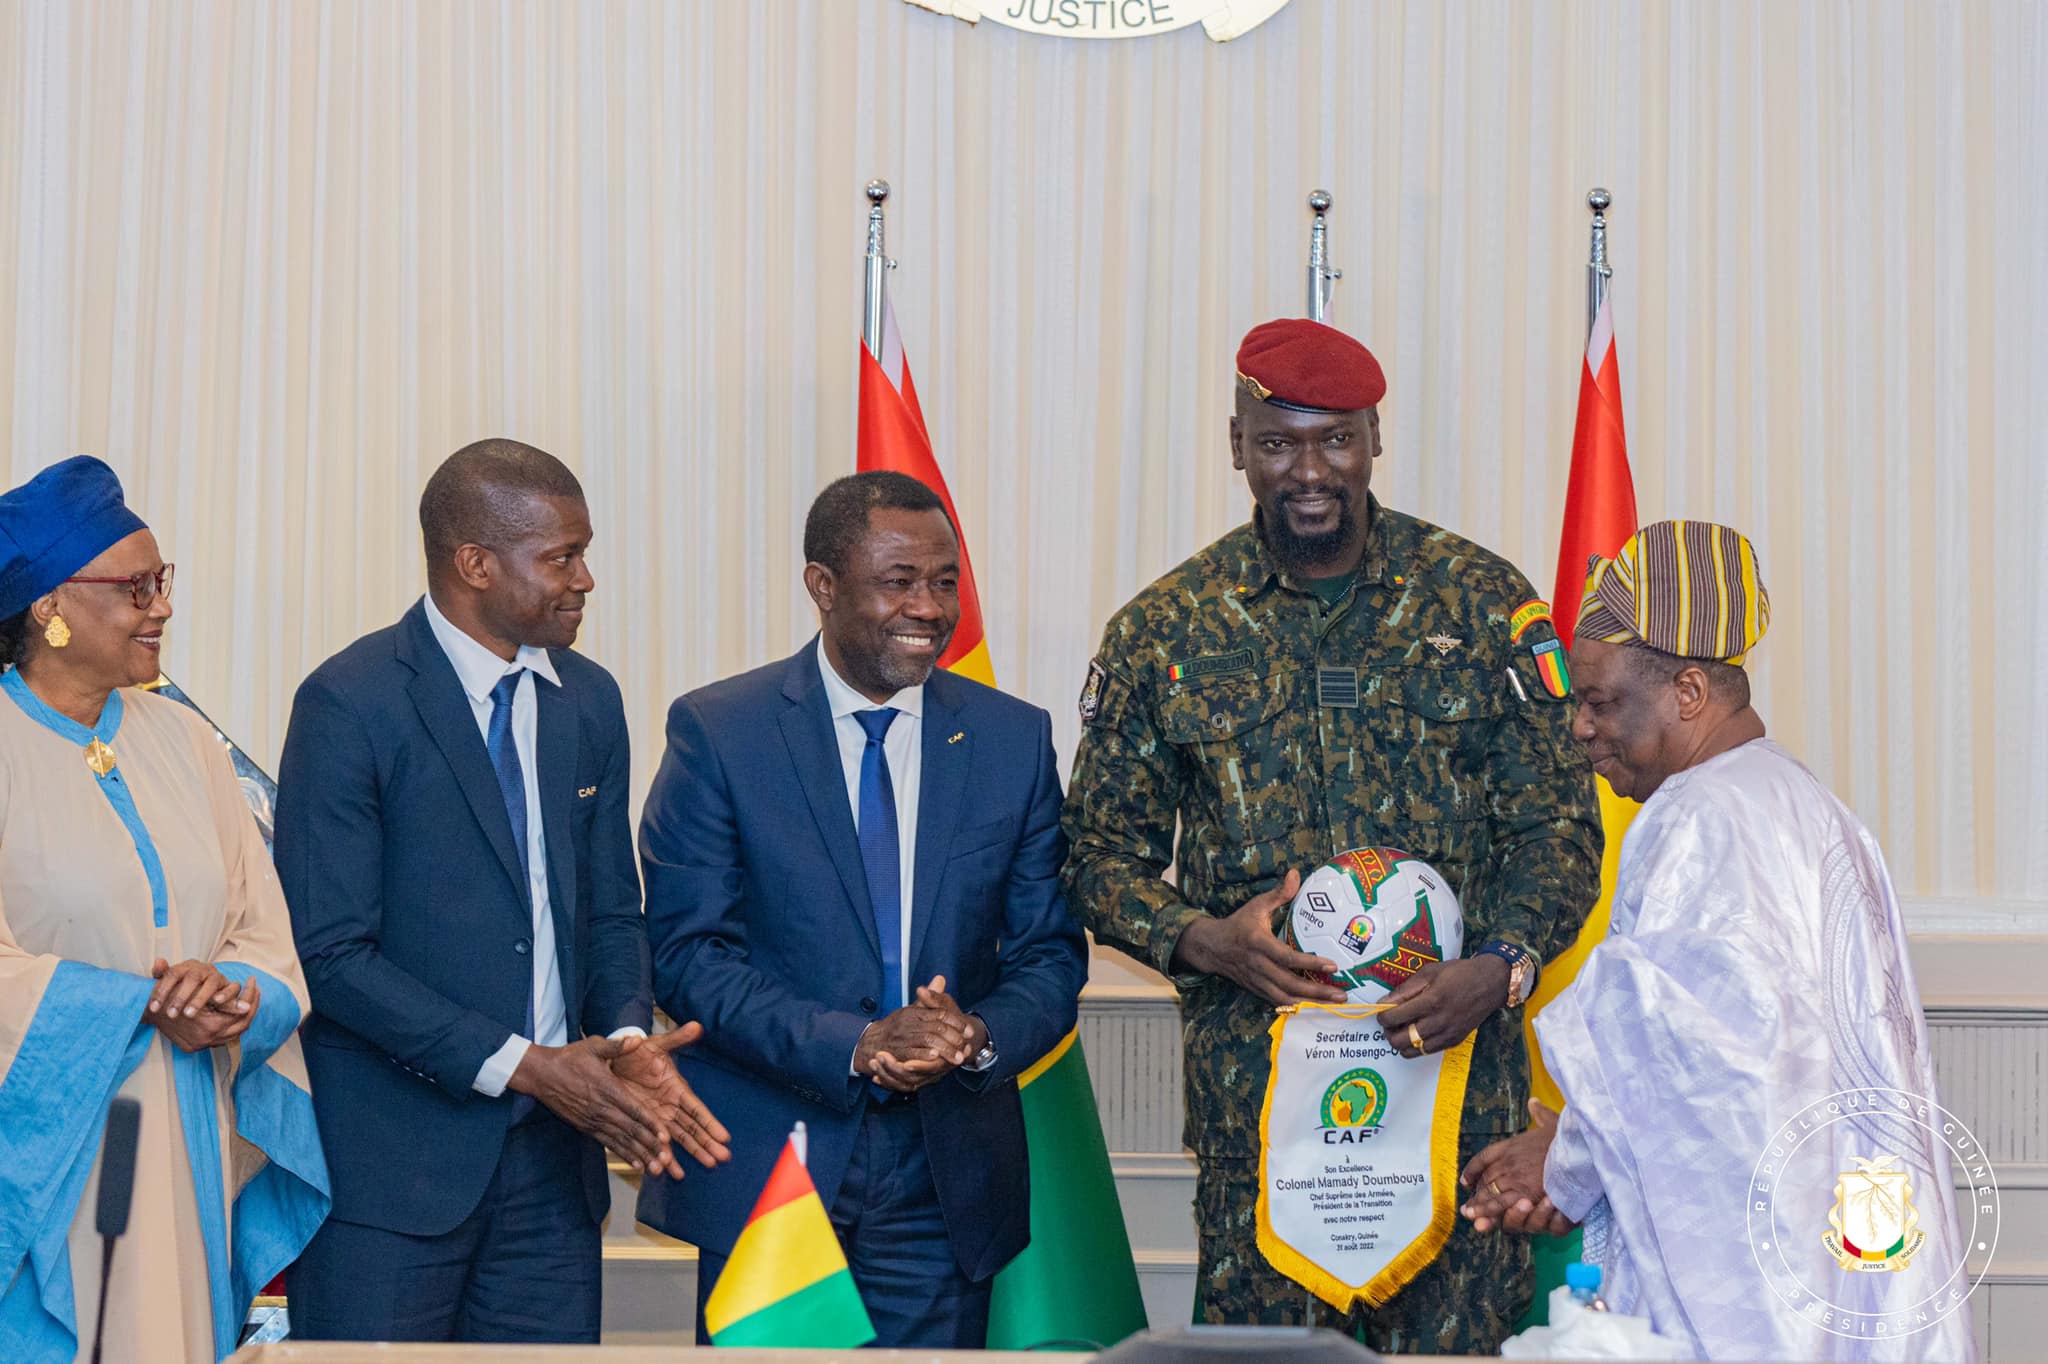 Le colonel Mamadi est prêt à faire tout pour la réussite de l'organisation de la coupe d'Afrique en Guinée en 2025. Après avoir pris langue